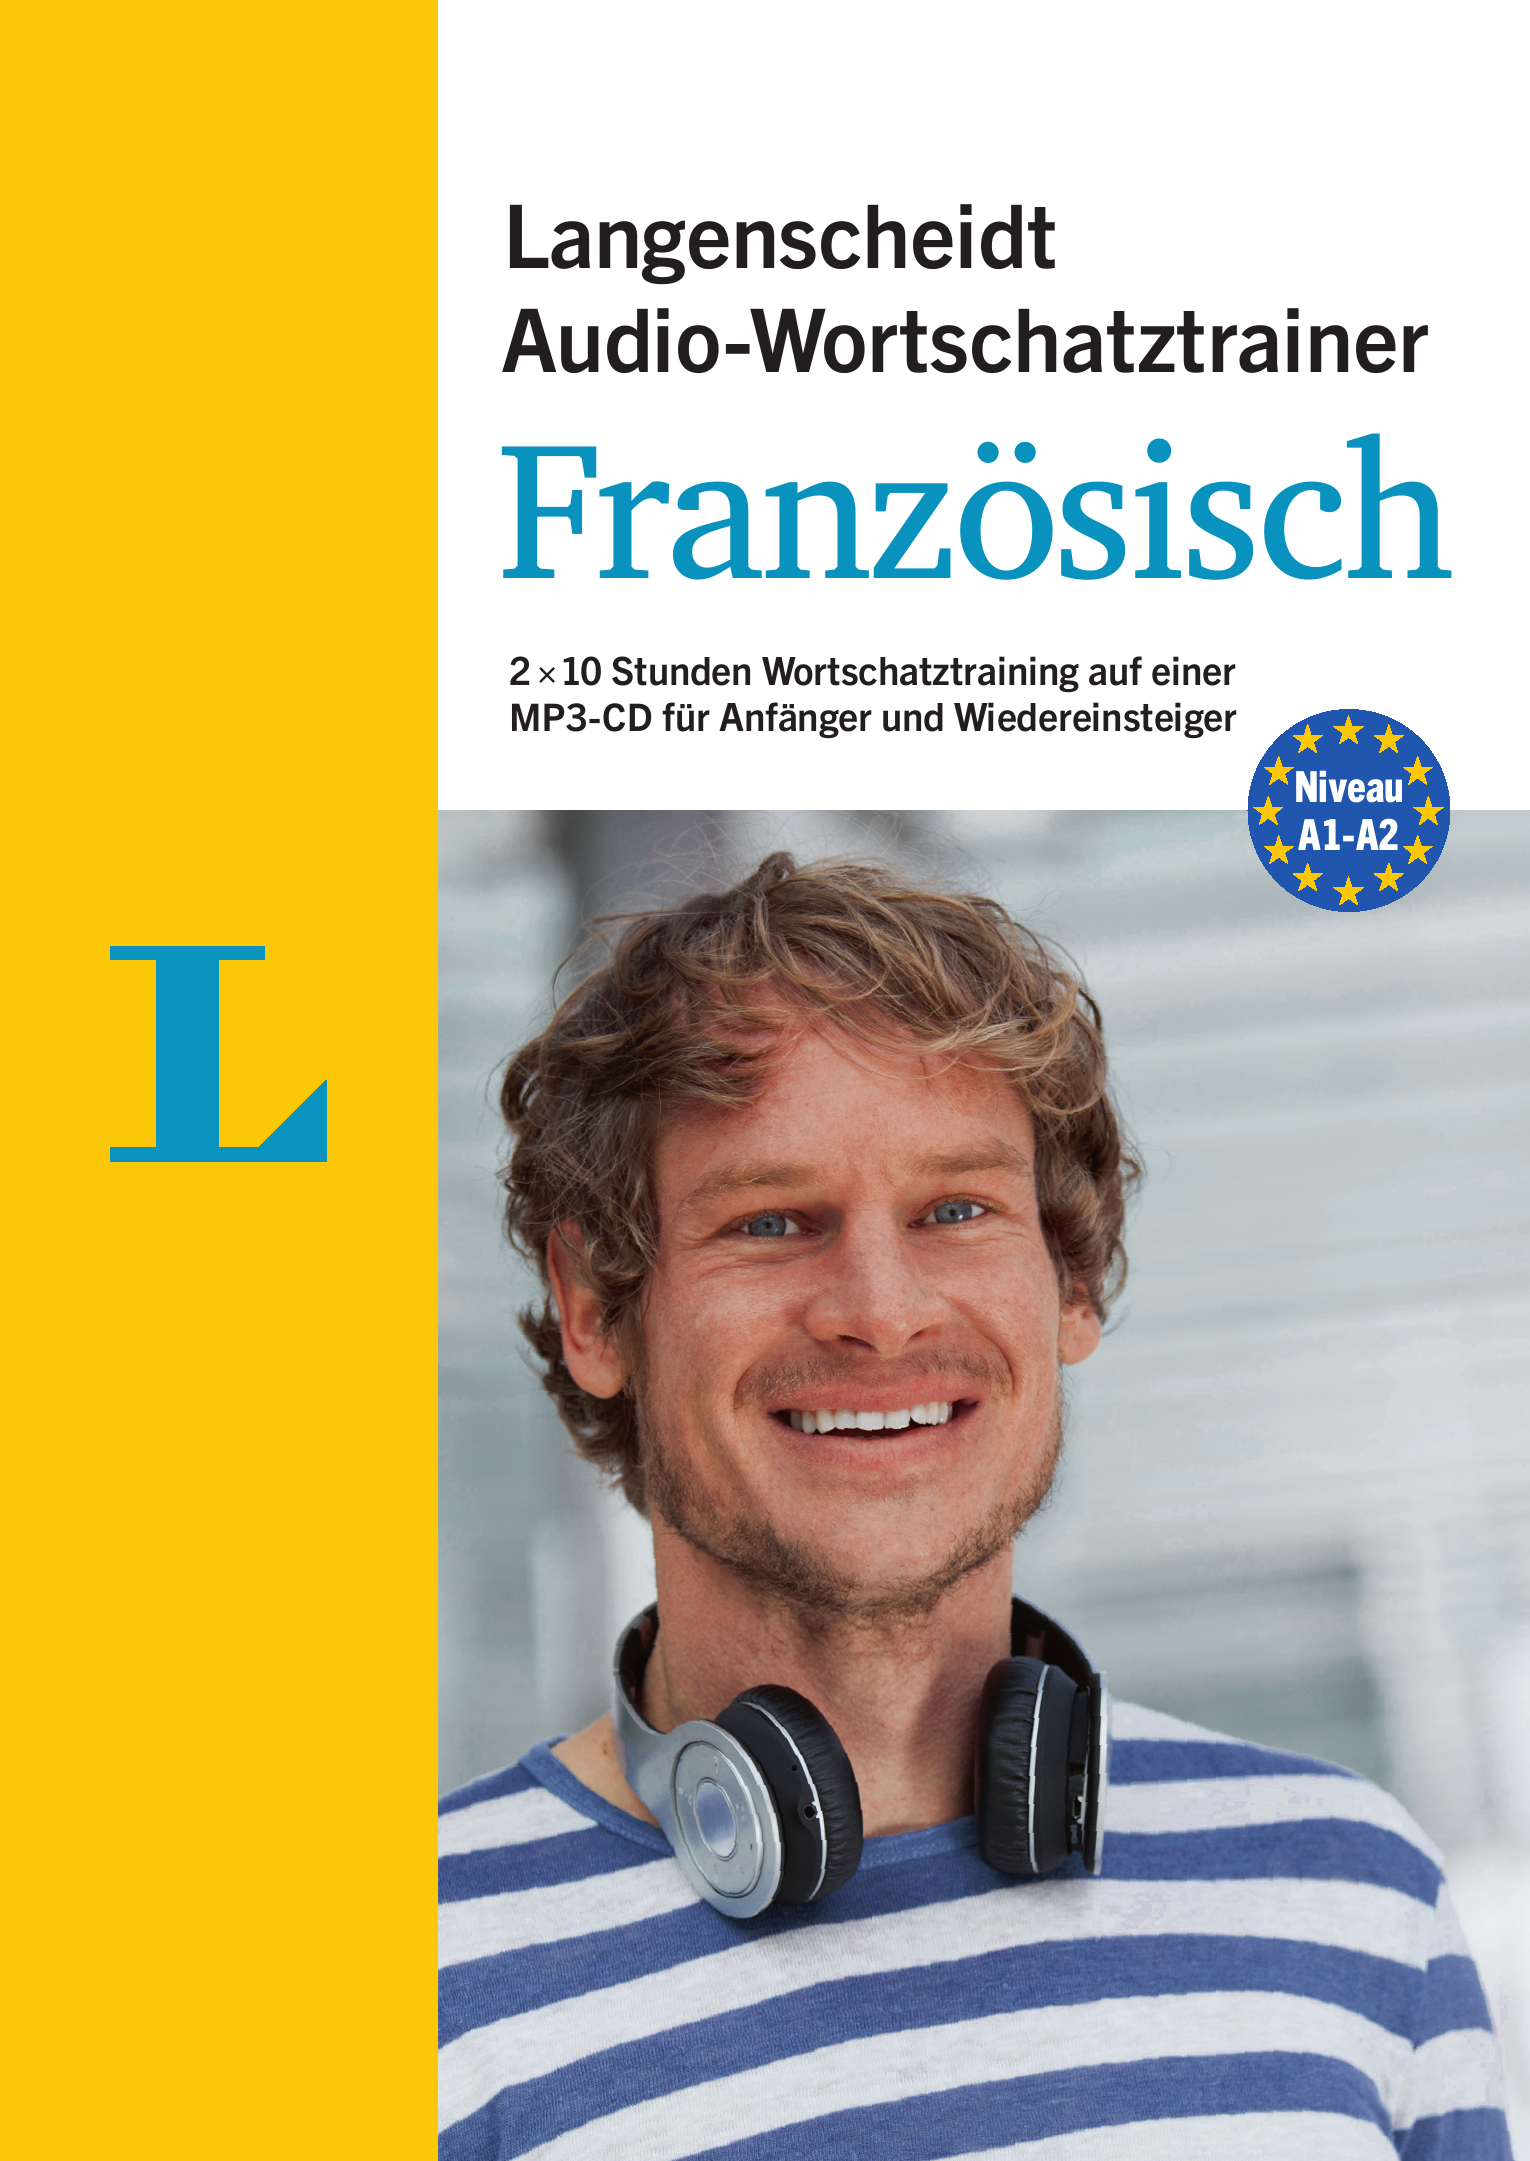 Langenscheidt Audio-Wortschatztrainer Französisch für Anfänger